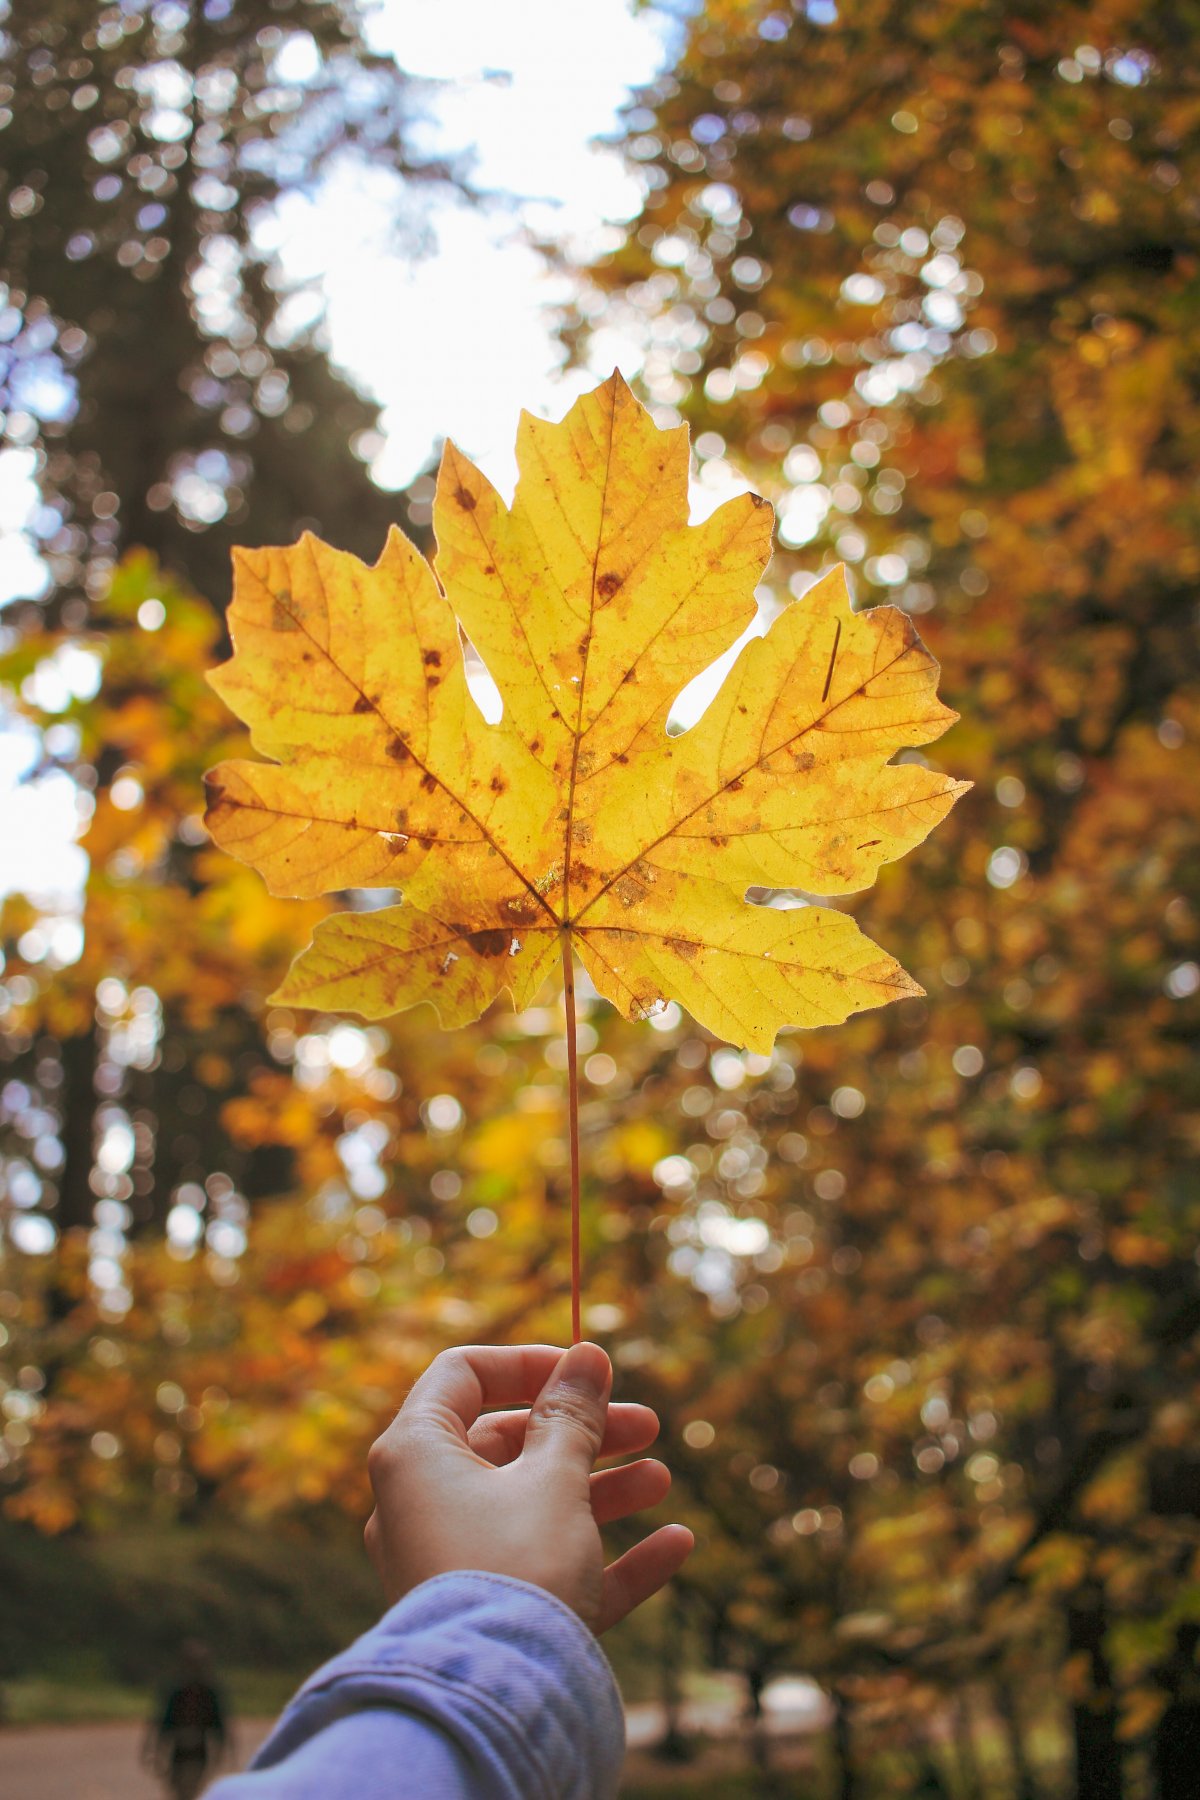 简介:一组精美的手拿秋天落叶图片,手拿,秋天,落叶,图片,标签:落叶